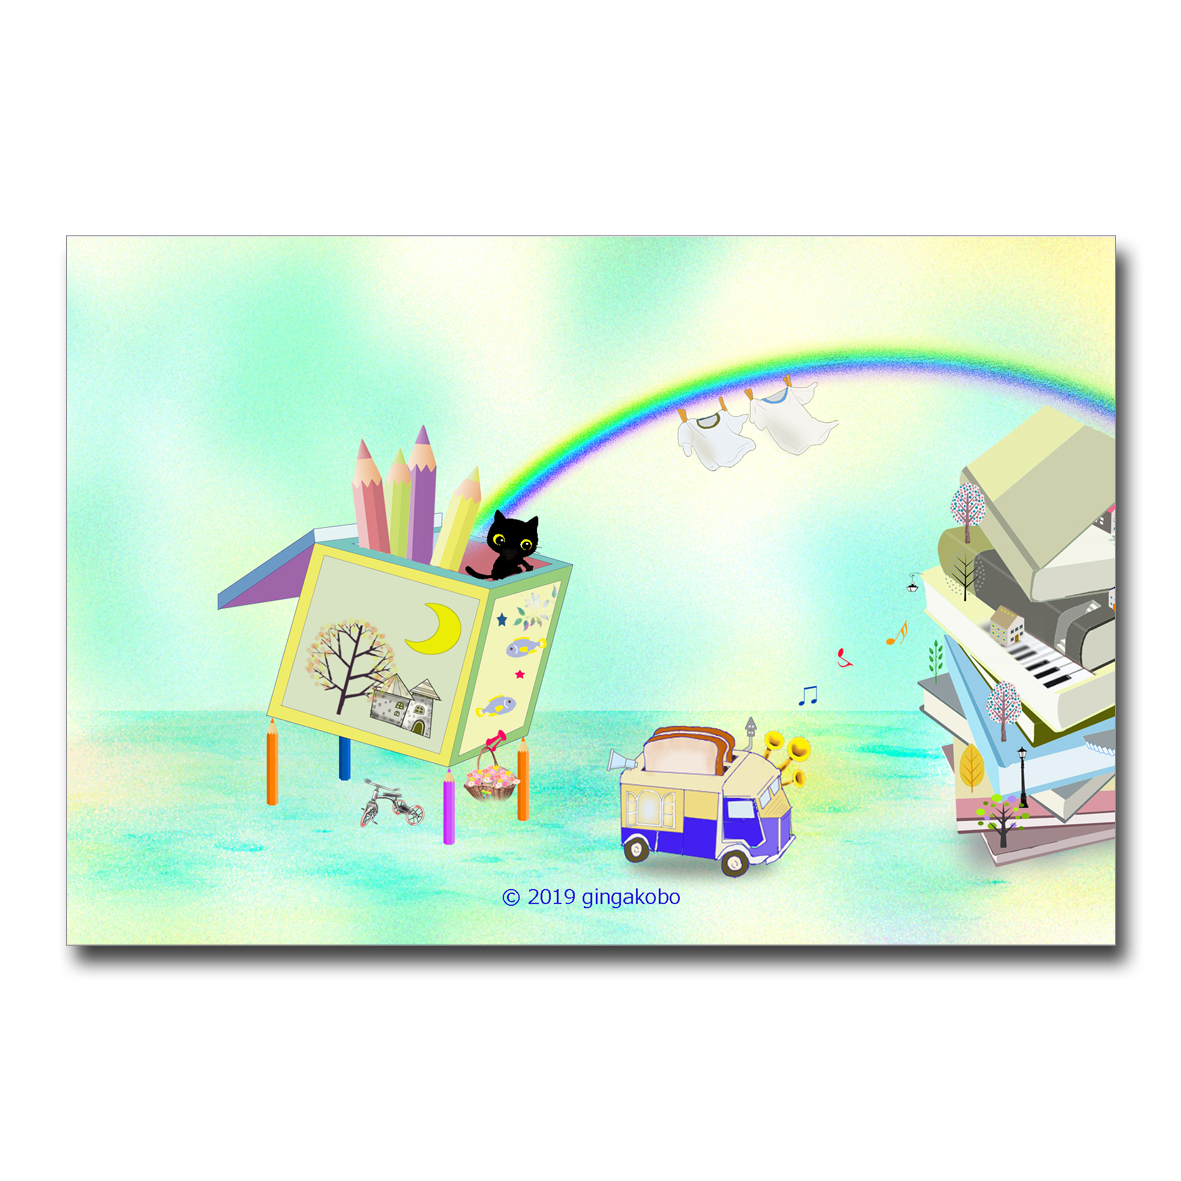 パ パ パン屋さんーーーー ちょっと待ってえ ほっこり癒しのイラストポストカード2枚組 No 835 Iichi ハンドメイド クラフト作品 手仕事品の通販